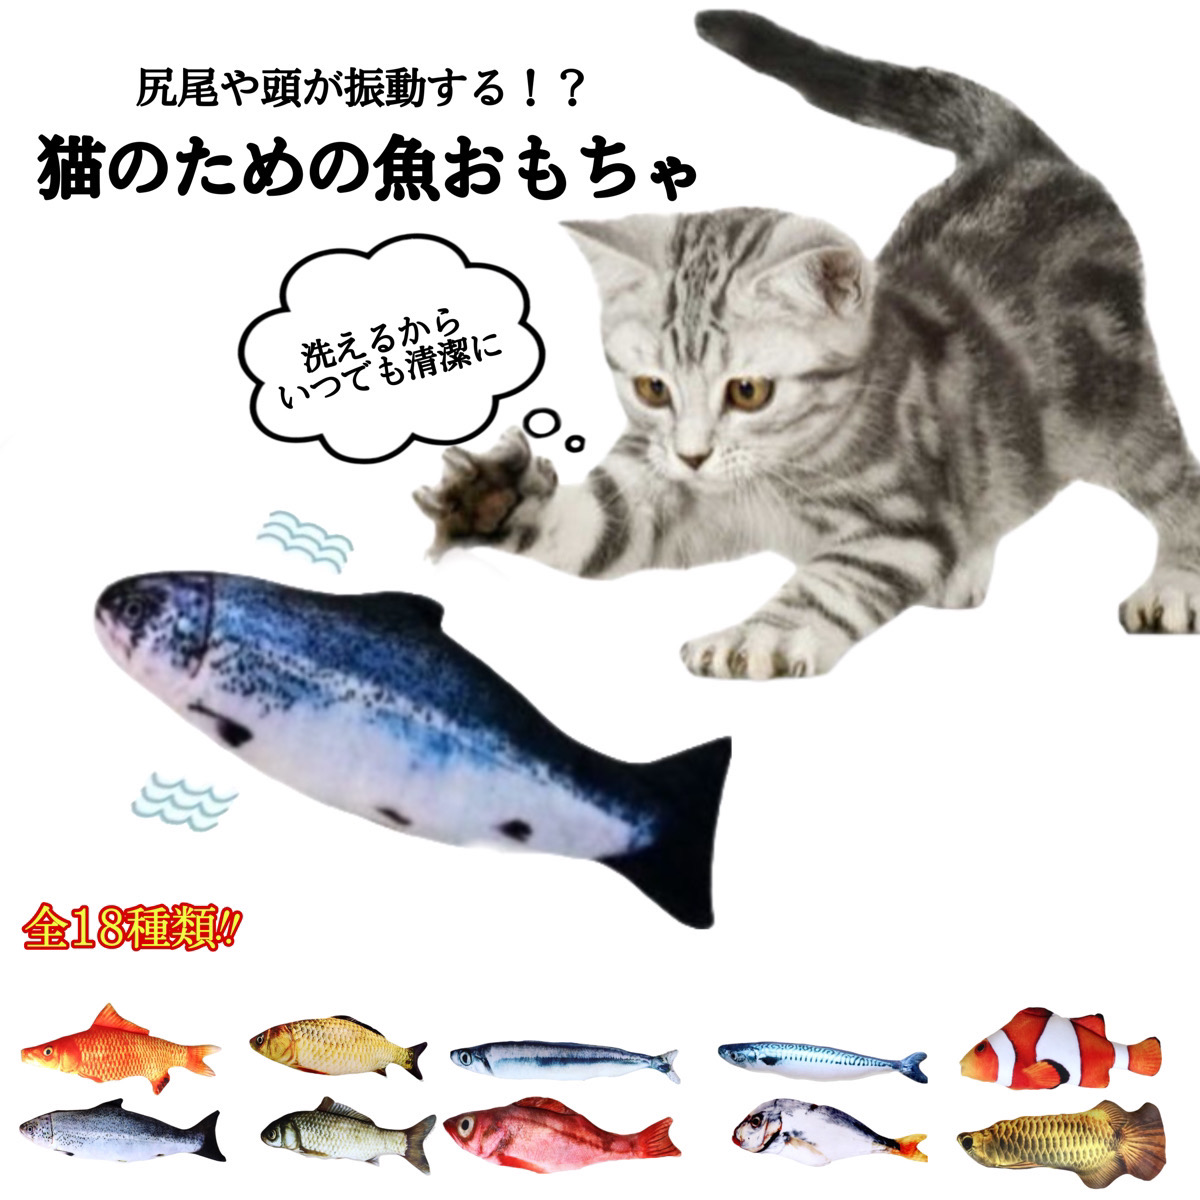  cat toy cat. toy cat goods cat .... electric fish automatic soft toy .. toy move fish electric fish USB